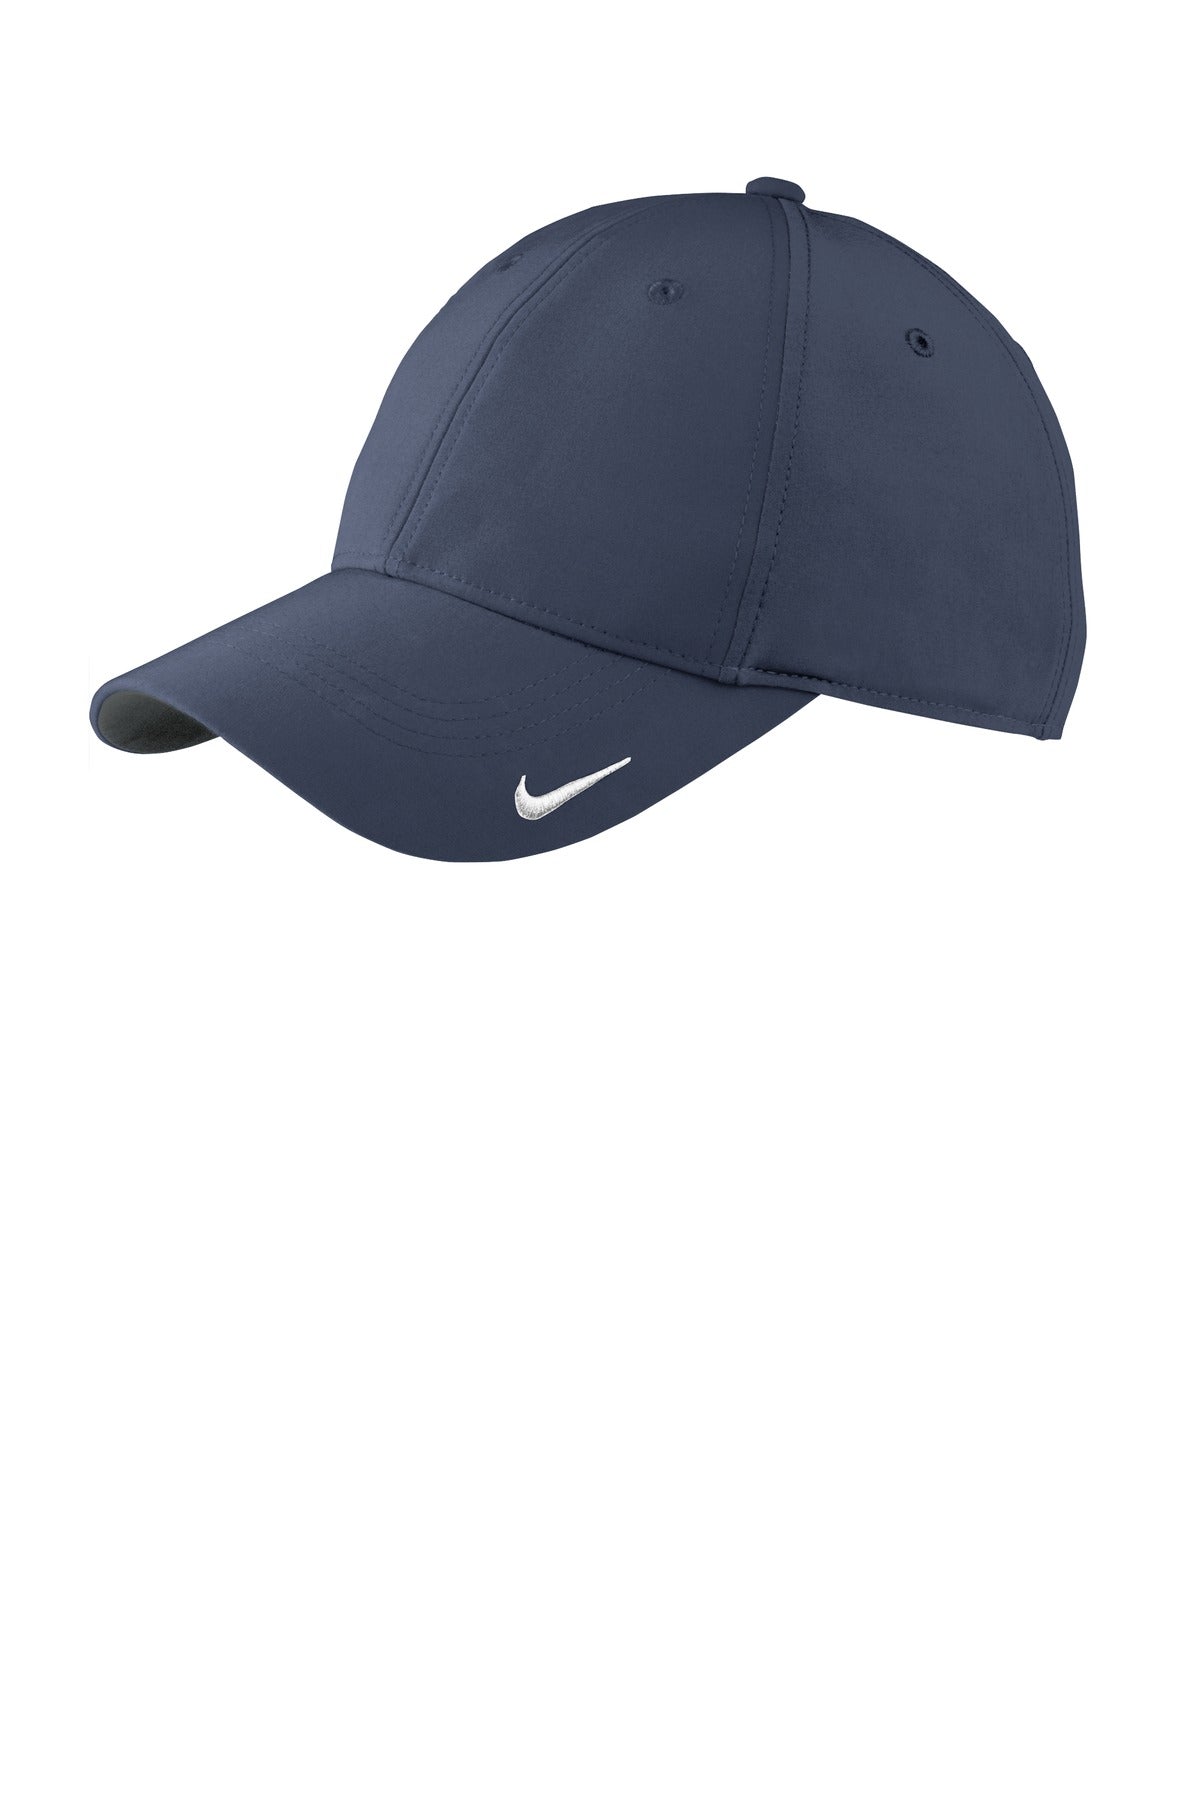 Caps Navy/ Navy OSFA Nike